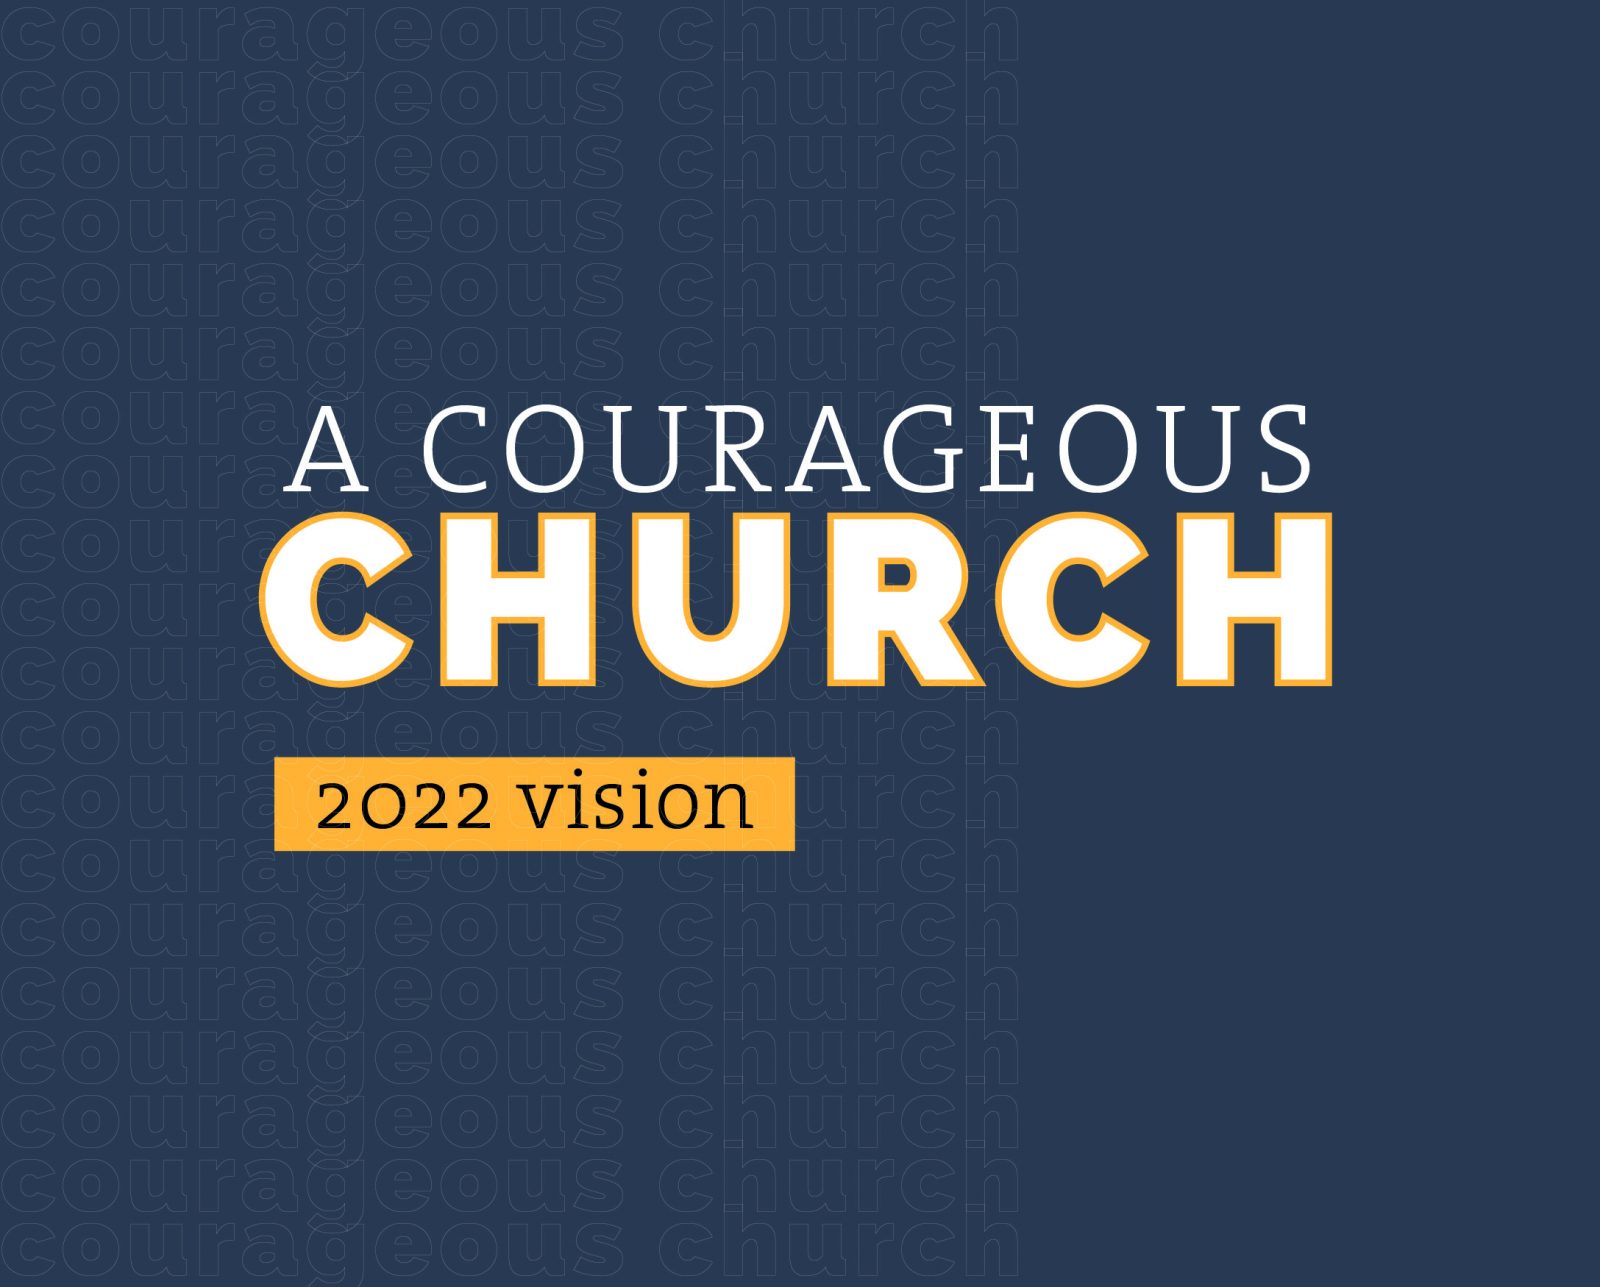 A Courageous Church